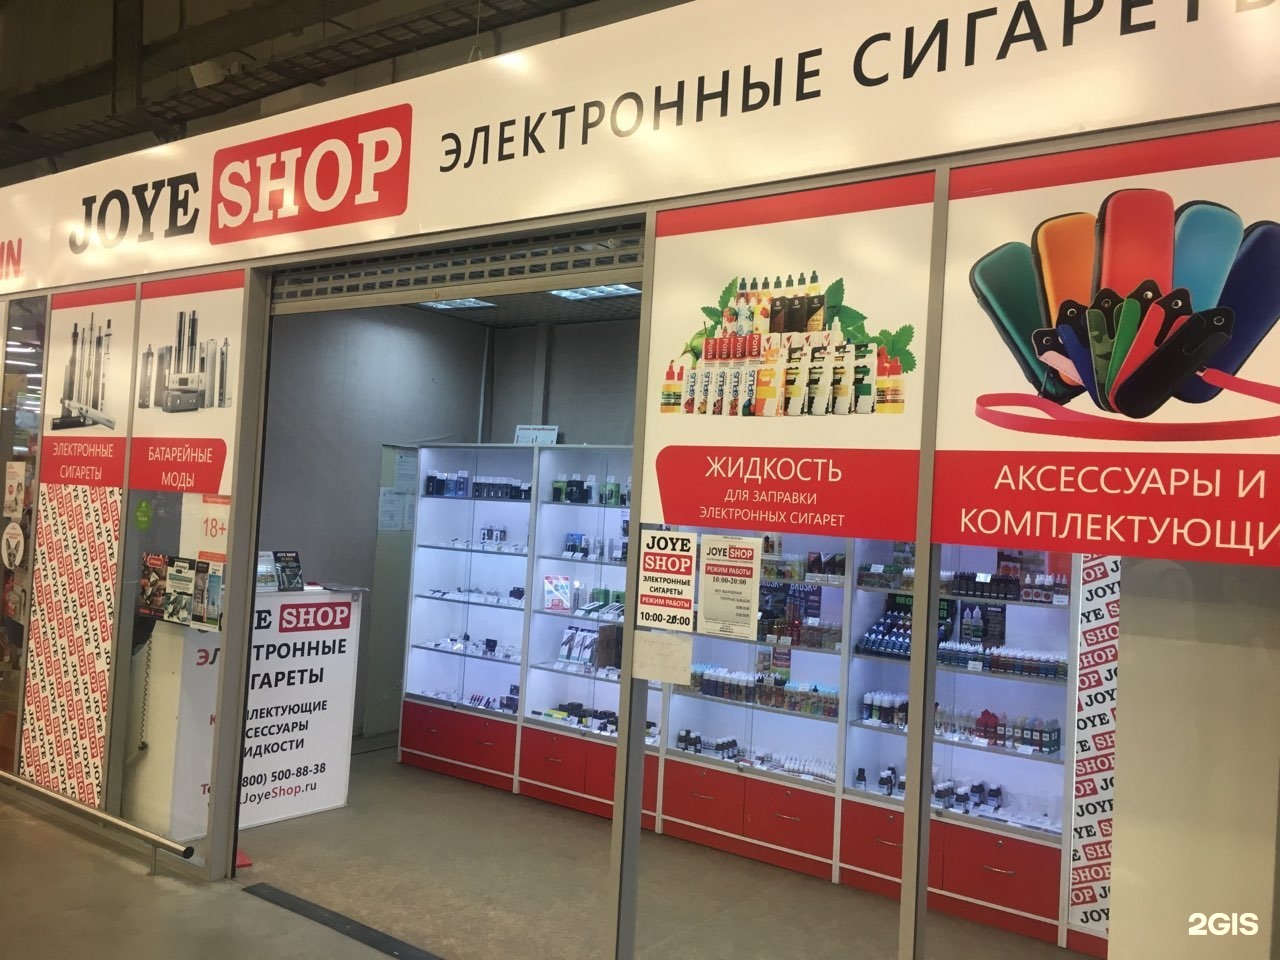 Магазины Электронной Сигареты Принадлежности Вологда